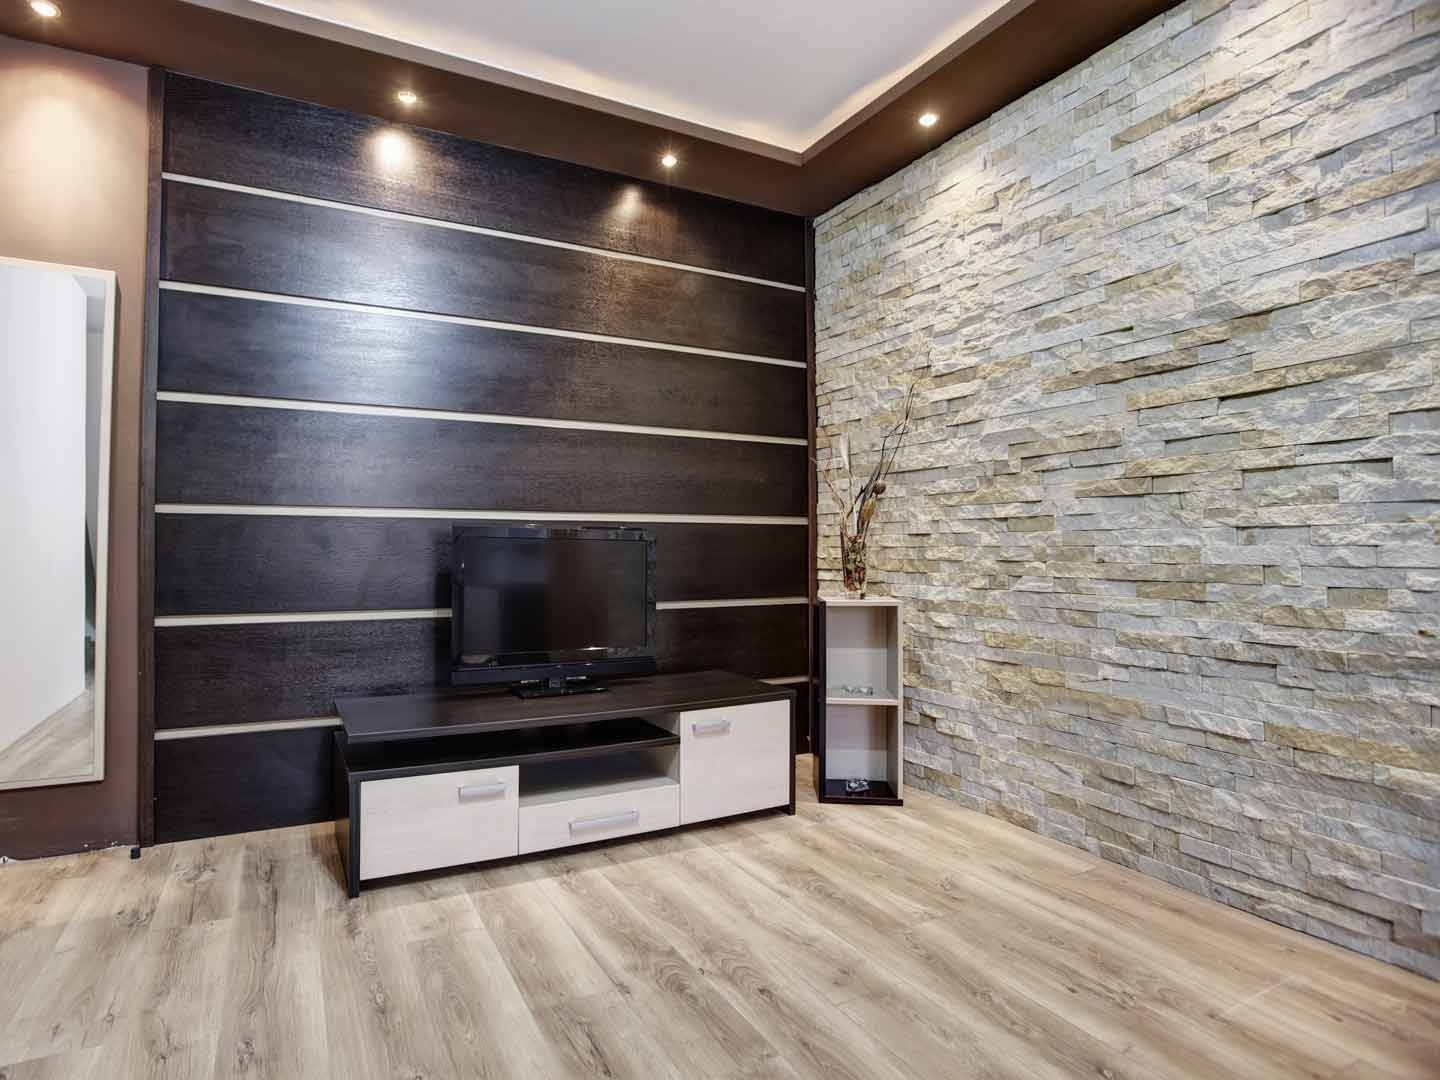 Отделка стен в квартире: различные варианты - современная, необычная, оригинальная, дешевый способ (фото)